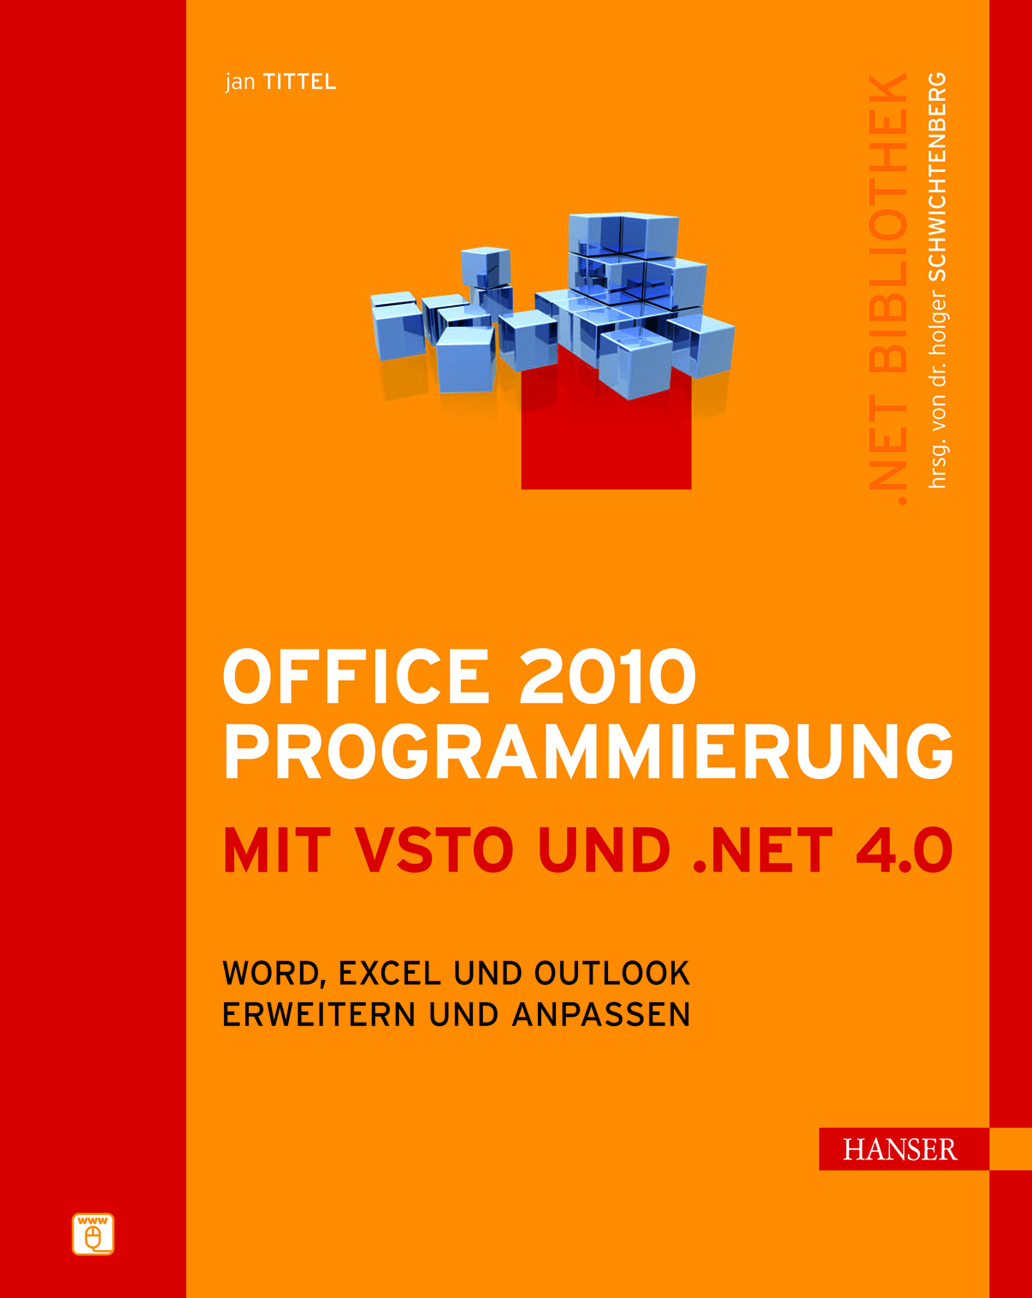 Office 2010 Programmierung mit VSTO und .NET 4.0: Word, Excel und Outlook erweitern und anpassen (Carl Hanser Verlag, 2011)